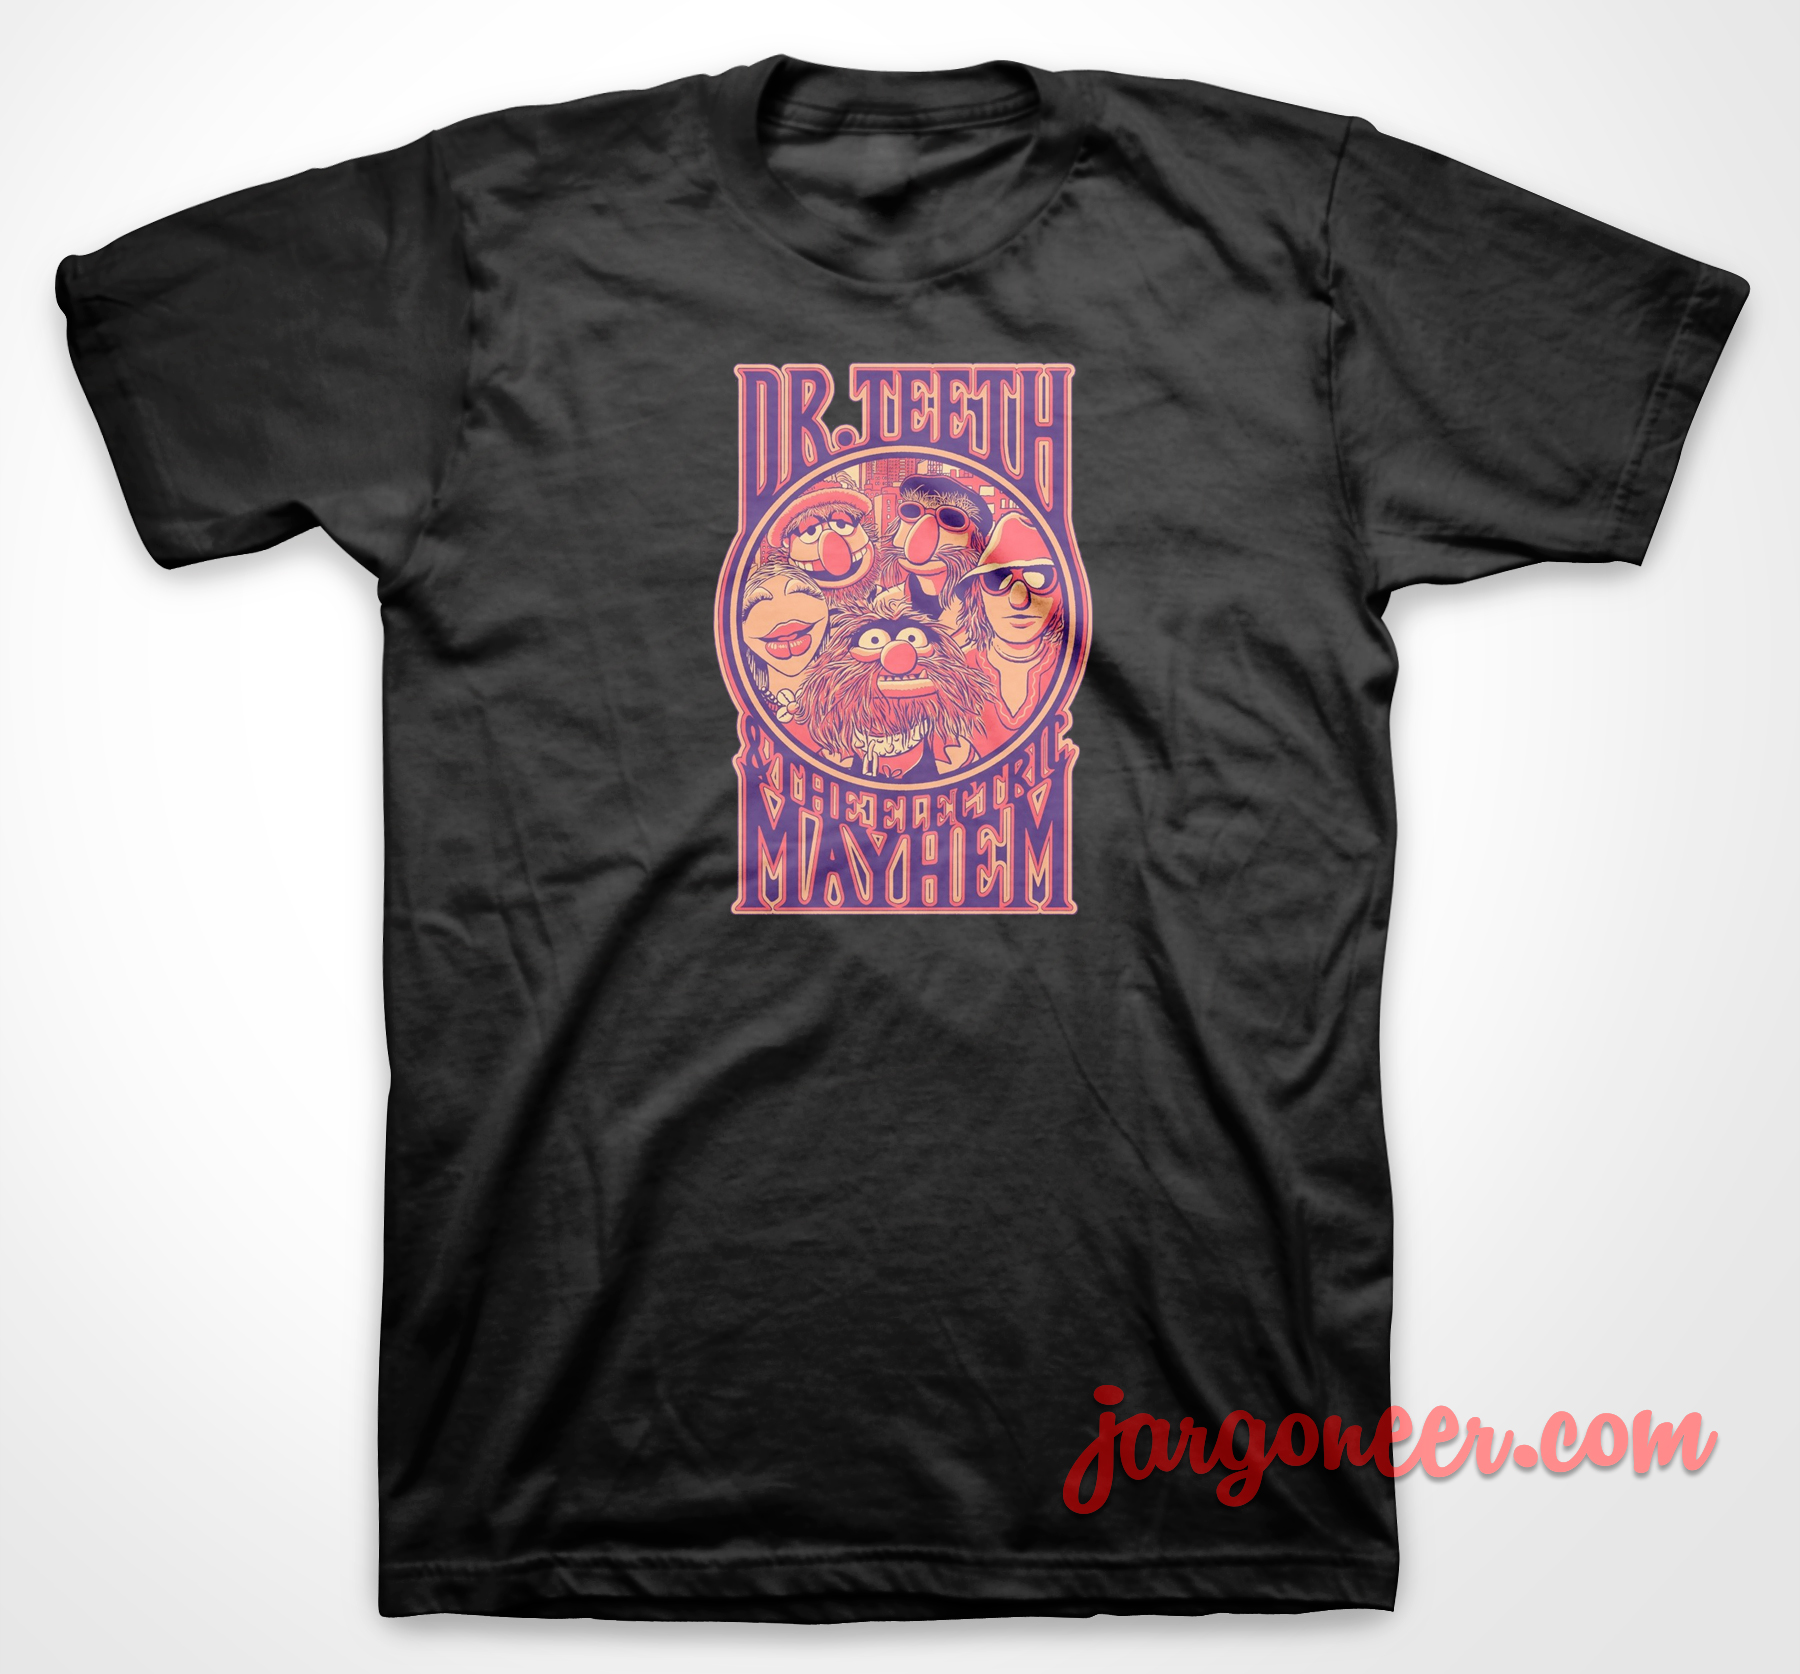 Electric Mayhem - Shop Unique Graphic Cool Shirt Designs